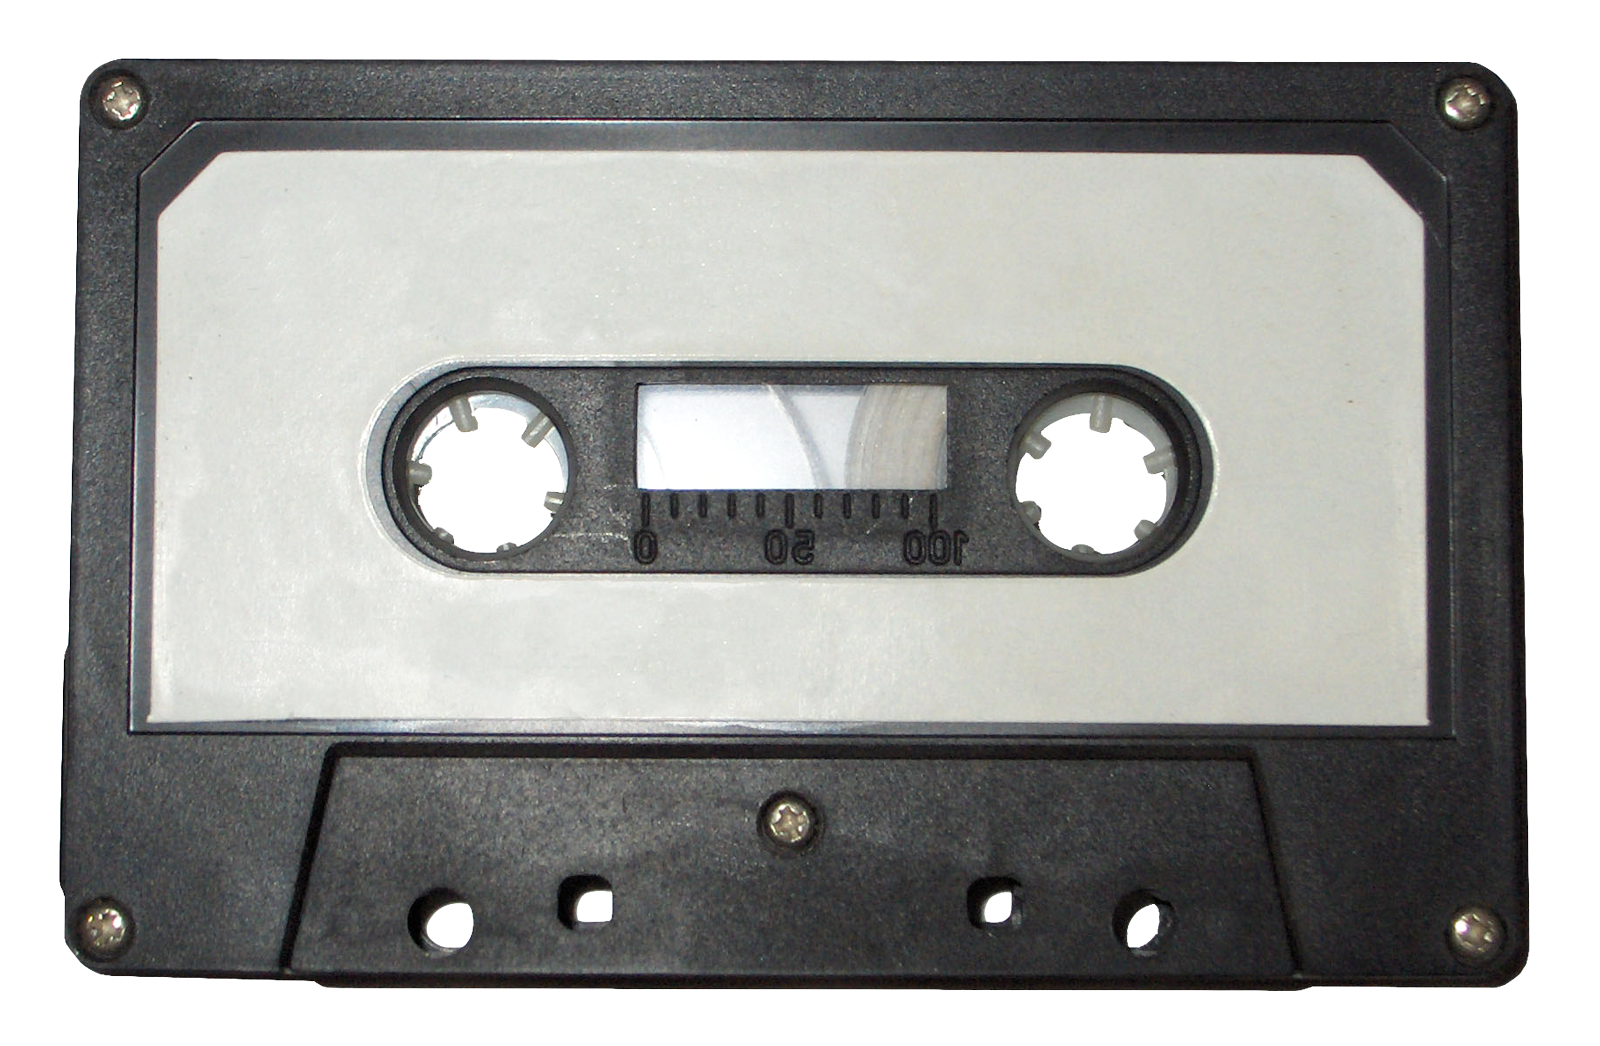 Cassette Hd Png Hdpng.com 1600 - Cassette, Transparent background PNG HD thumbnail